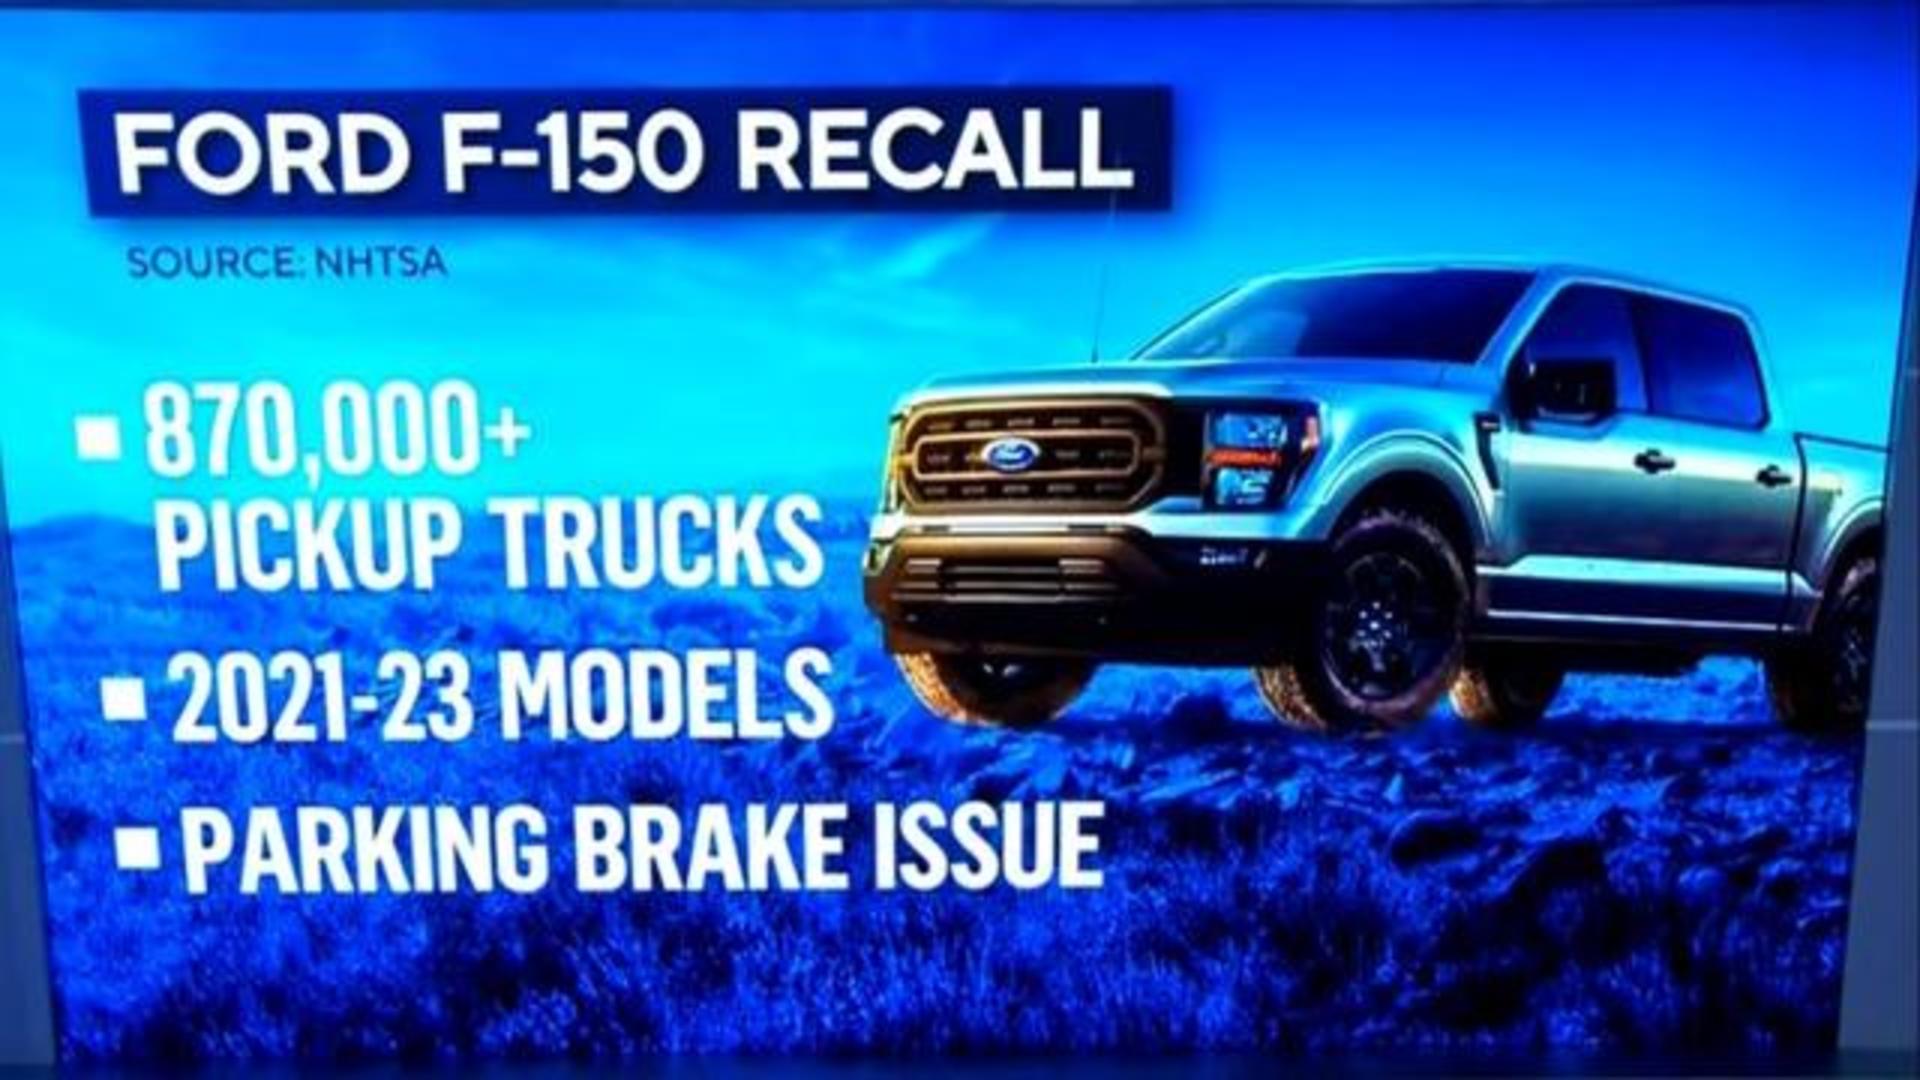 Ford recalls 870,000 F-150 trucks - CBS News